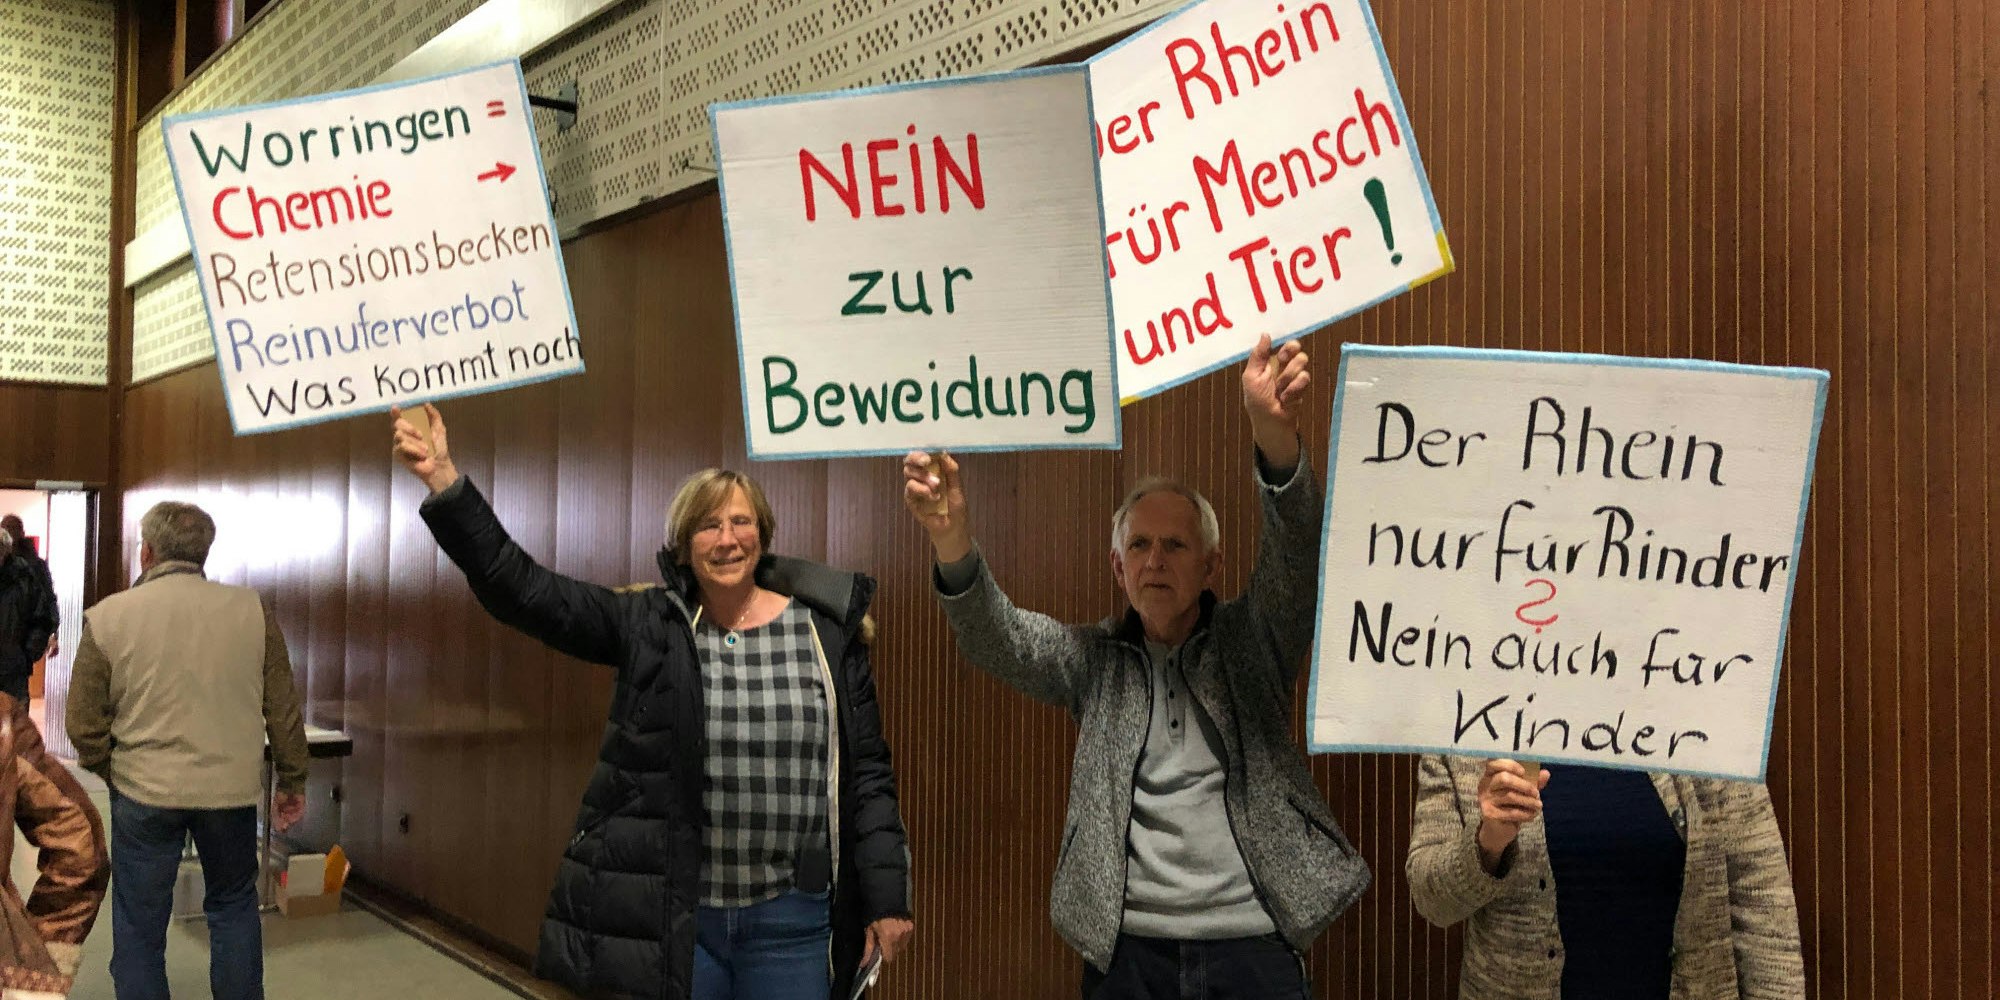 Kaspar Dick vom Bürgerverein vor der Einzäunung (l.), gegen die auch Worringer bei der Info-Veranstaltung protestierten. Sie fordern Zugang zum Rhein.